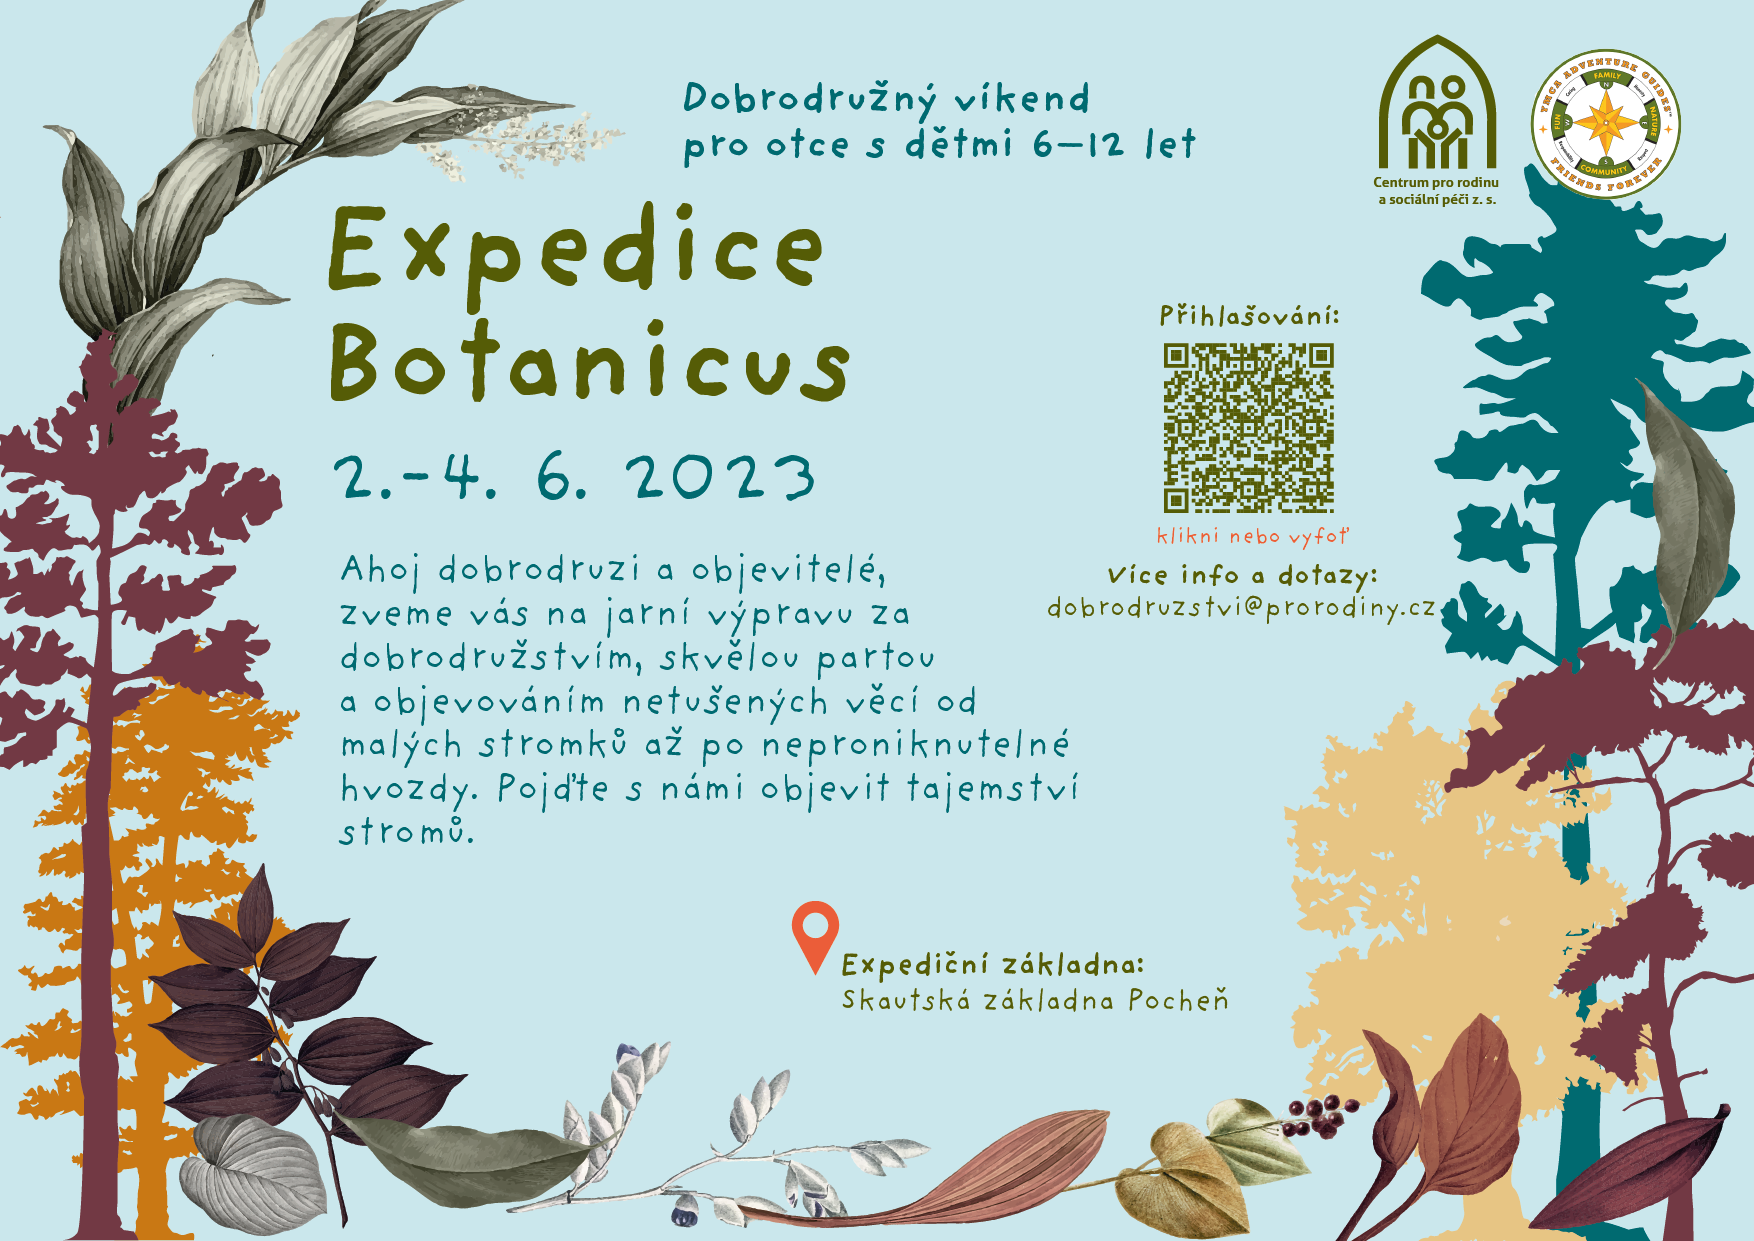 Expedice Botanicus – Dobrodružný víkend pro otce s dětmi 